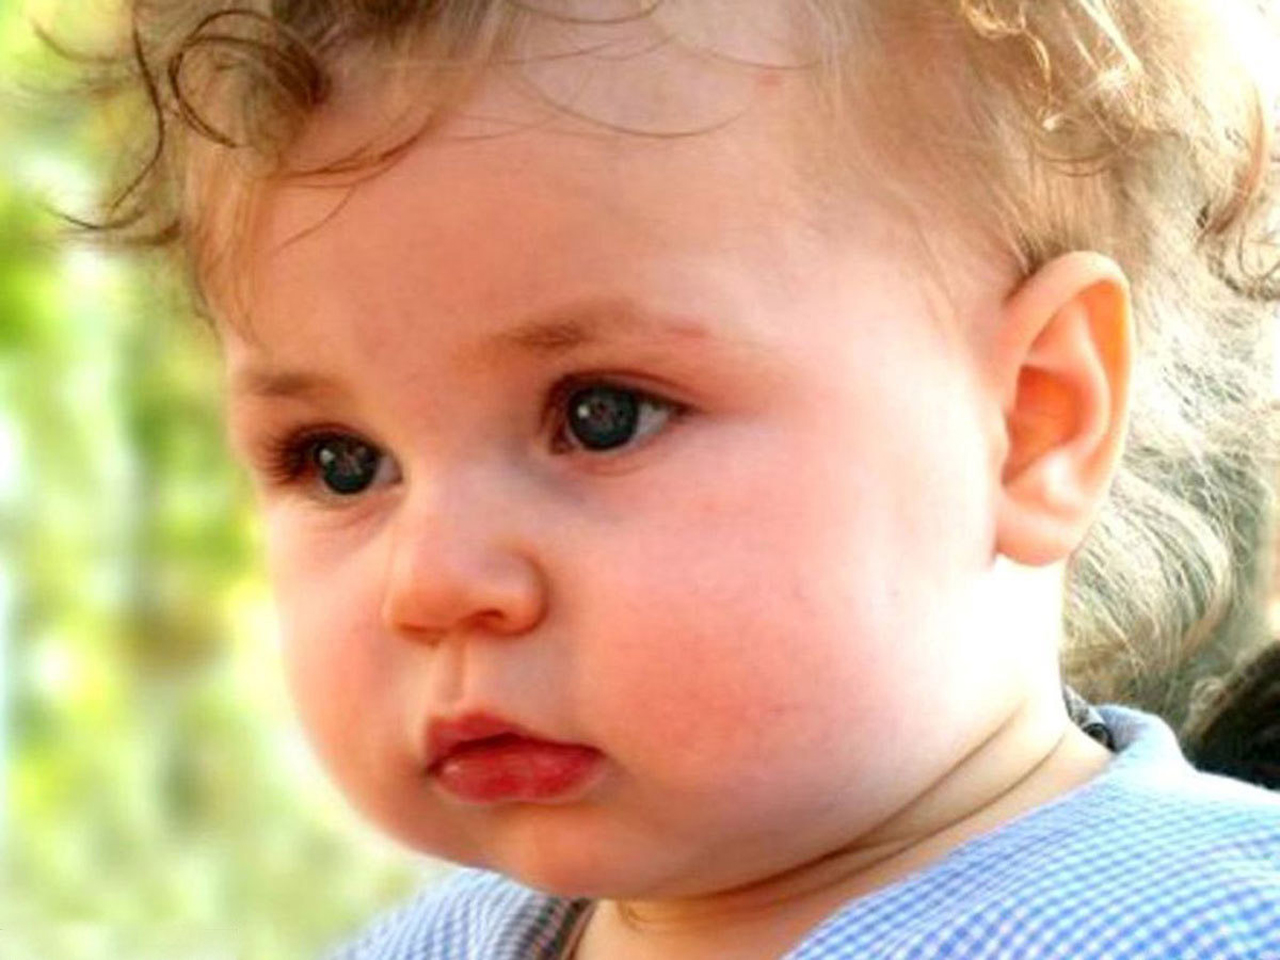 Cute Little Baby Boy With Blue Eyes HD Wallpaper Cute Little Babies